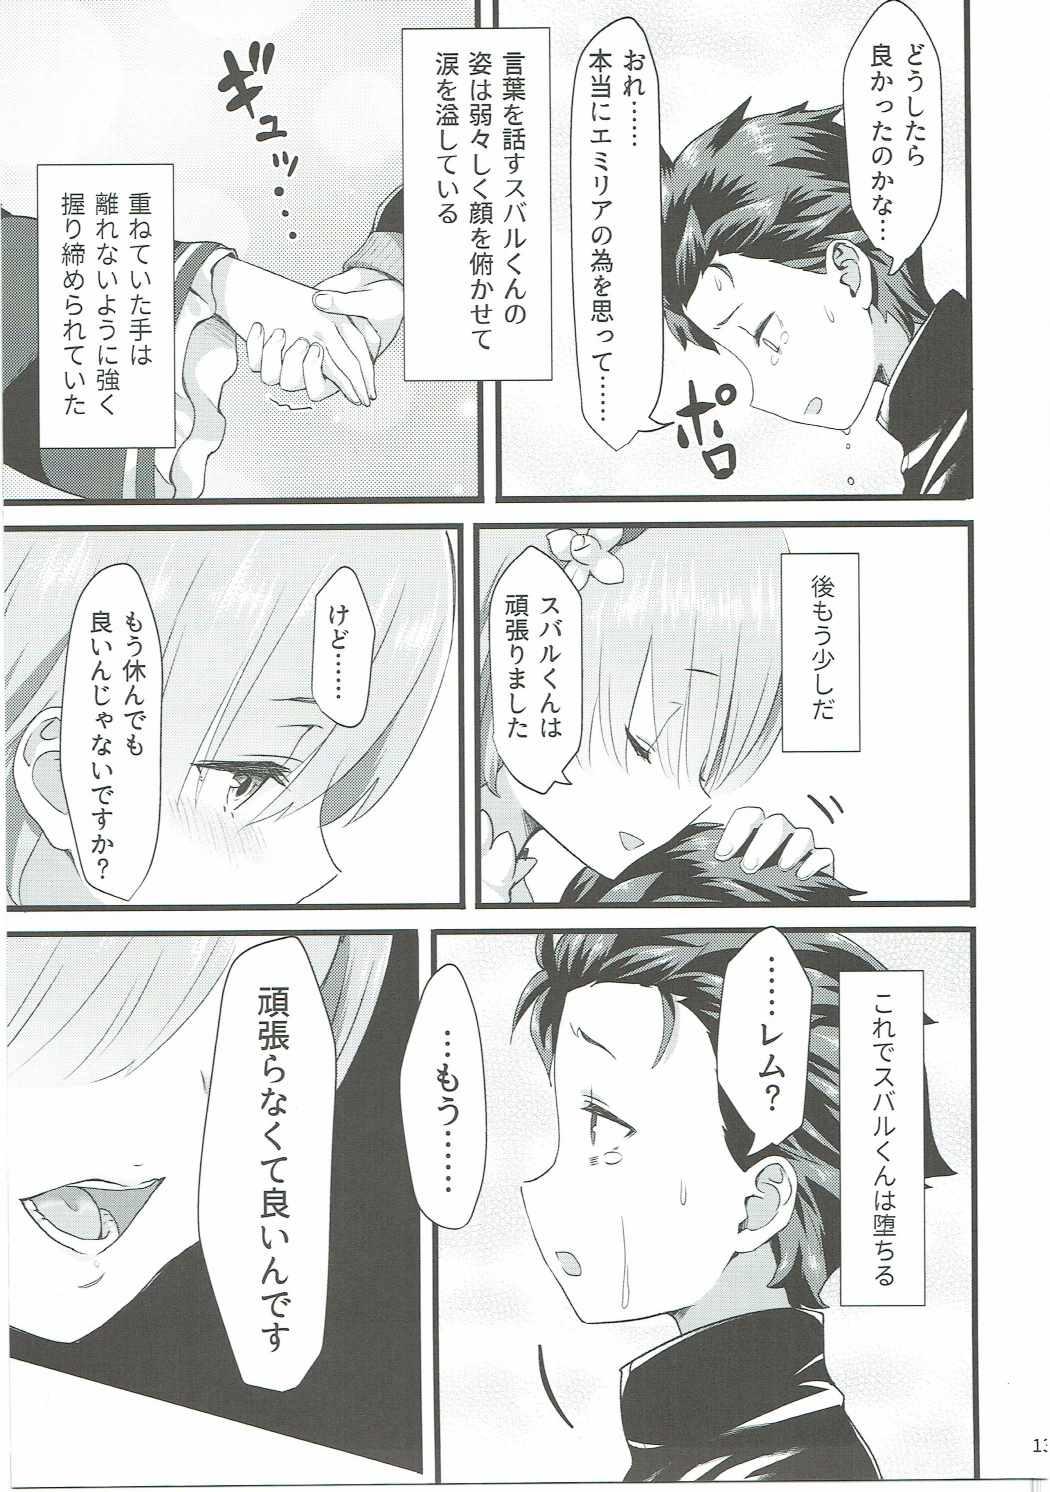 Ftvgirls Oni no Shoujo - Re zero kara hajimeru isekai seikatsu Olderwoman - Page 12